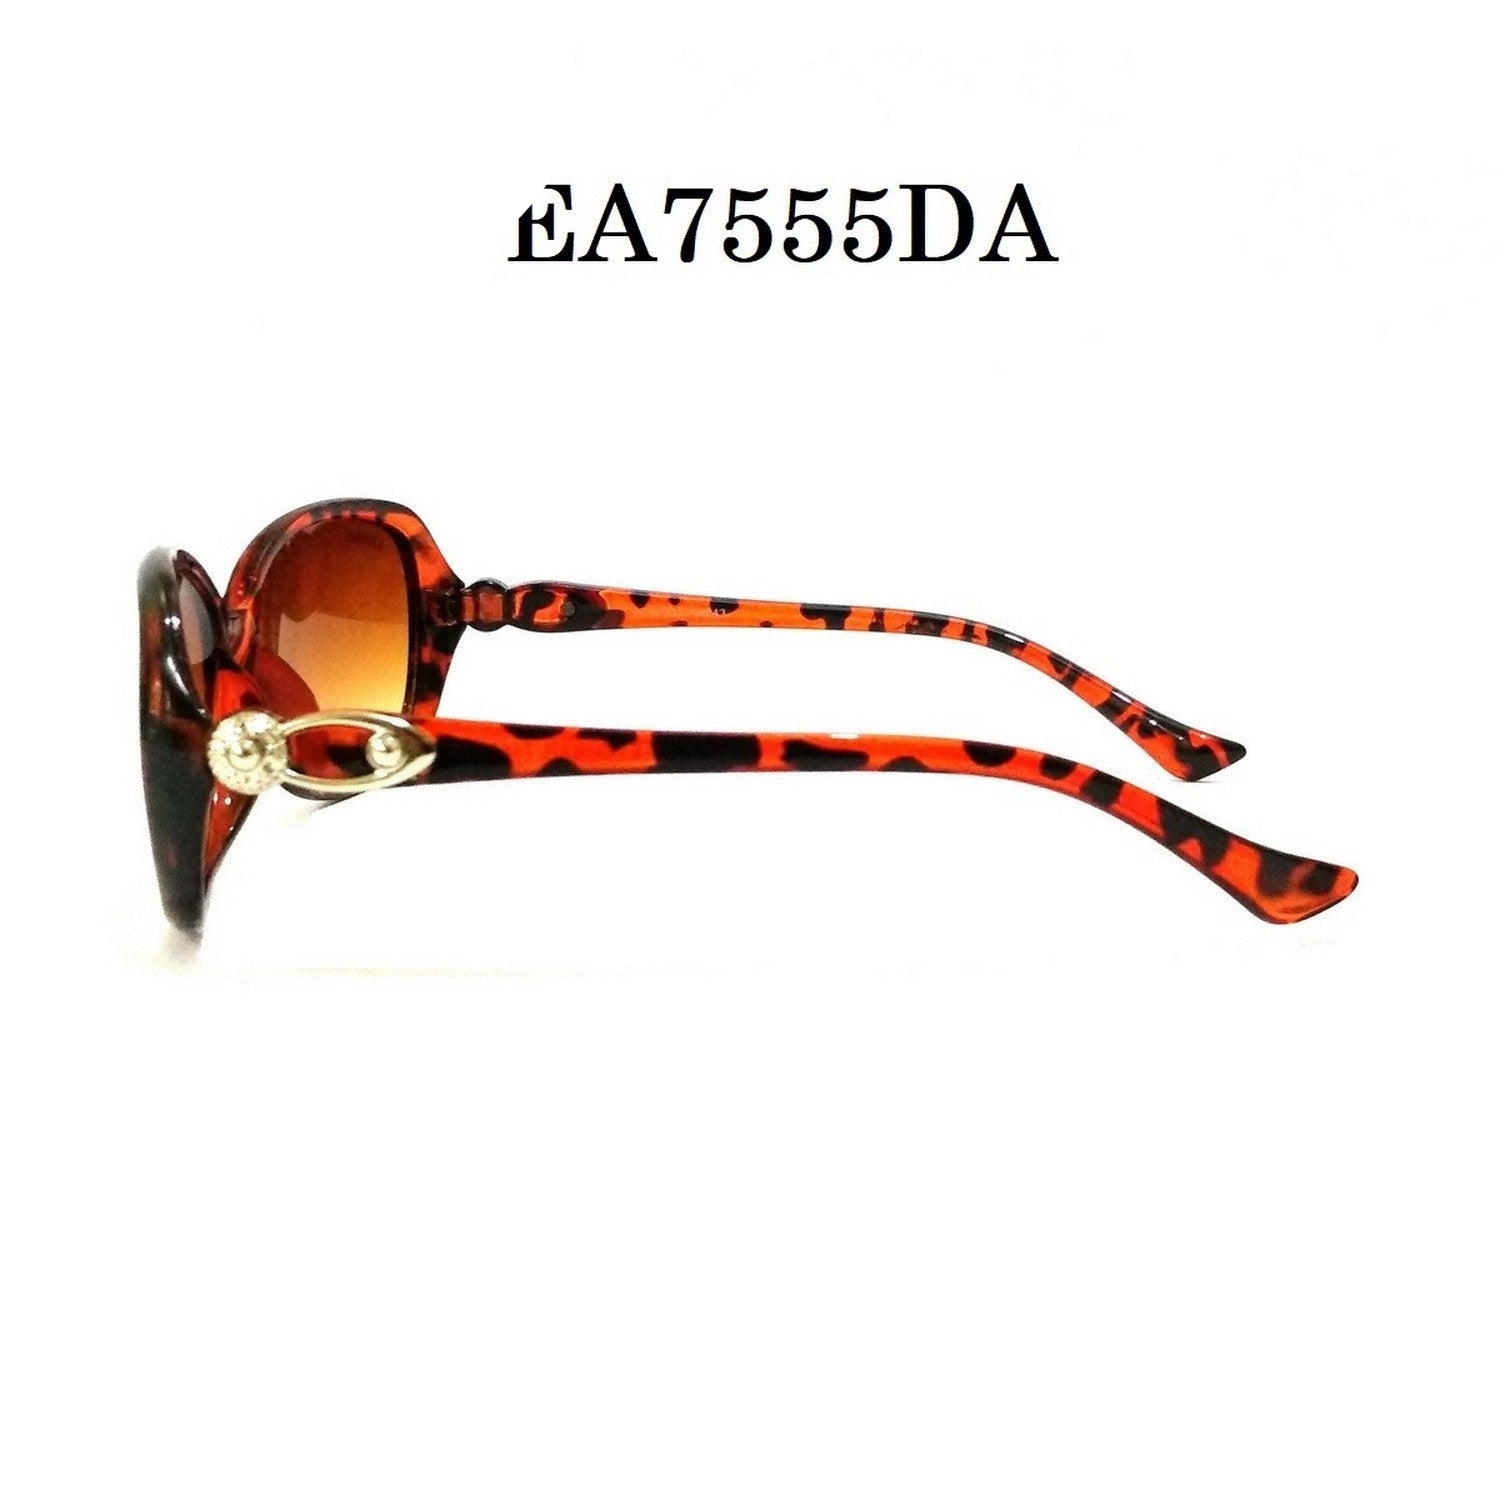 Leopard DA Color Sunglasses for Women EA7555DA - Glasses India Online